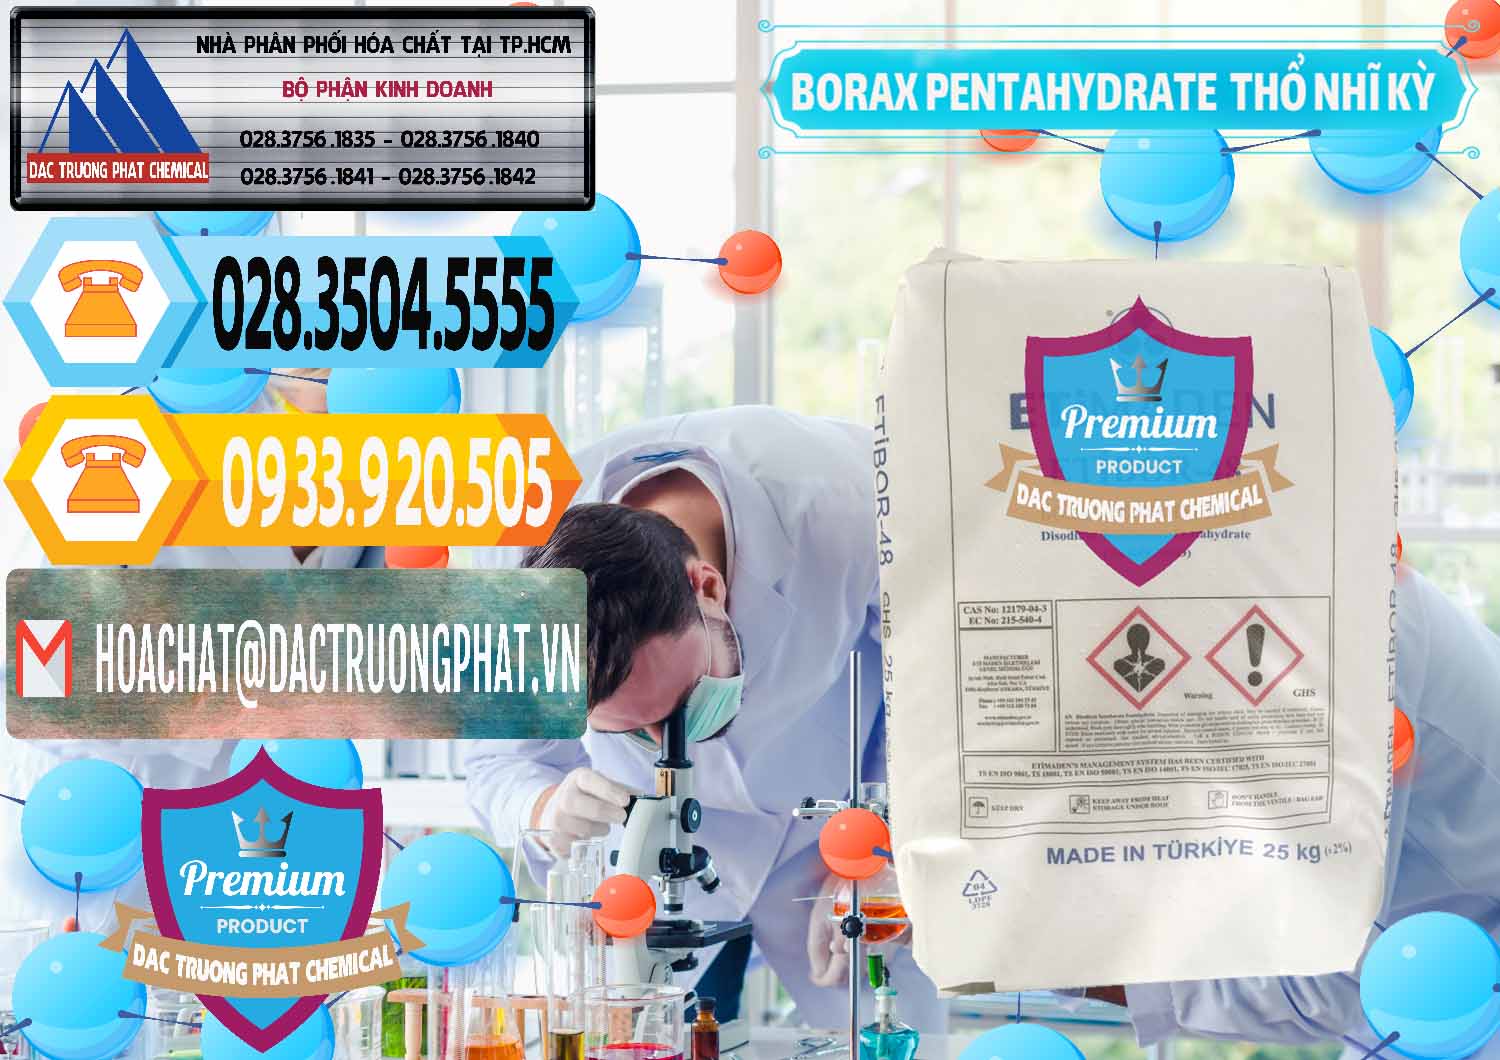 Công ty nhập khẩu & bán Borax Pentahydrate Thổ Nhĩ Kỳ Turkey - 0431 - Chuyên cung cấp ( kinh doanh ) hóa chất tại TP.HCM - hoachattayrua.net